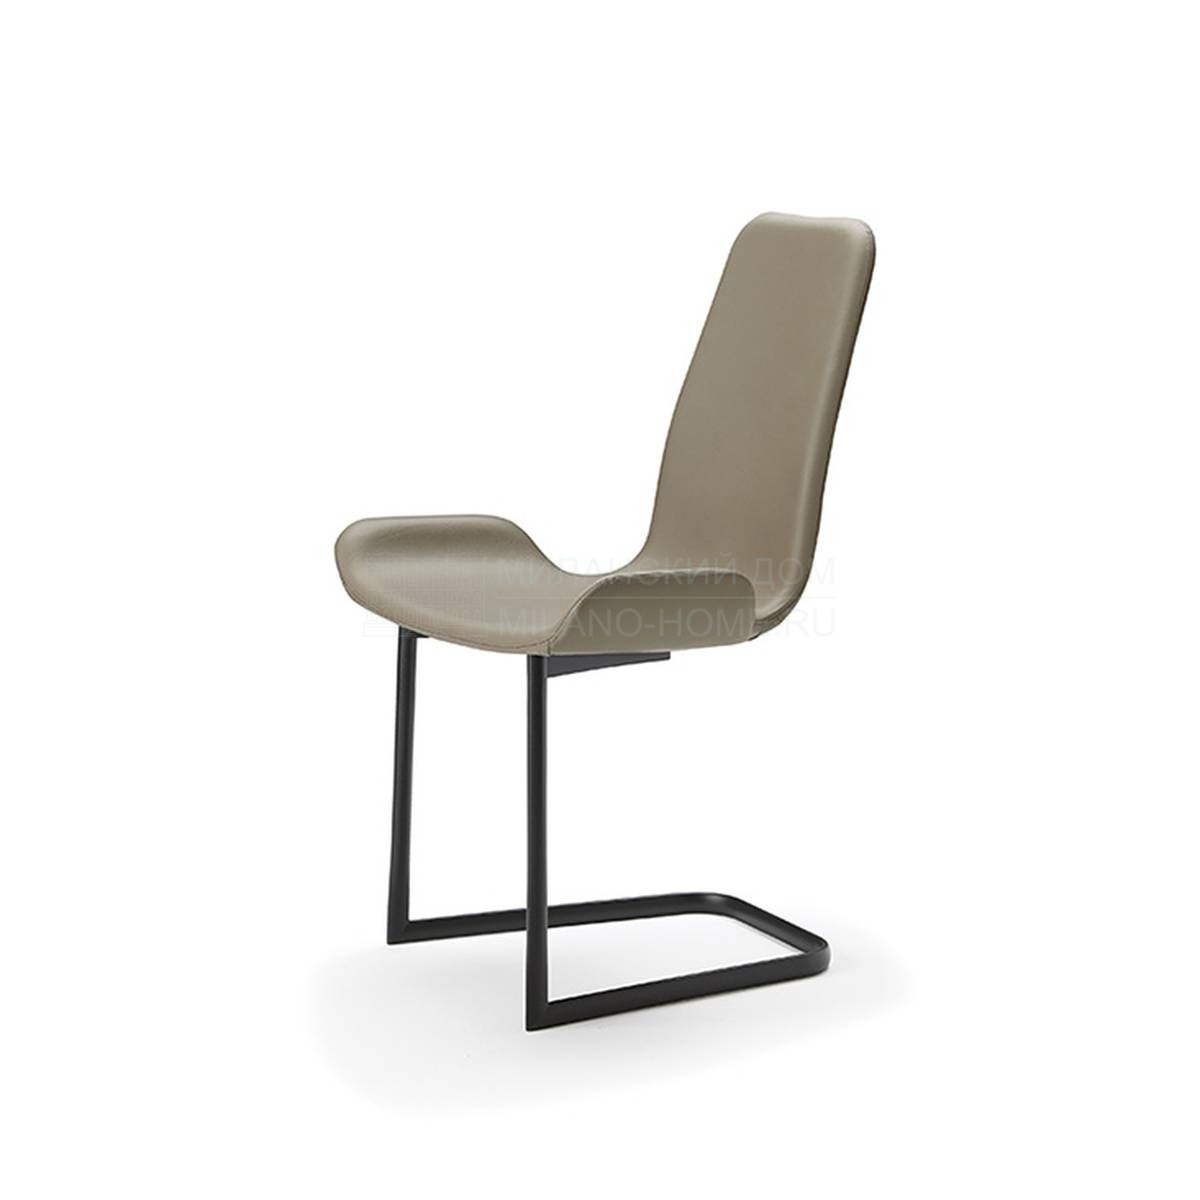 Металлический / Пластиковый стул Flamingo cantilever chair из Италии фабрики CATTELAN ITALIA